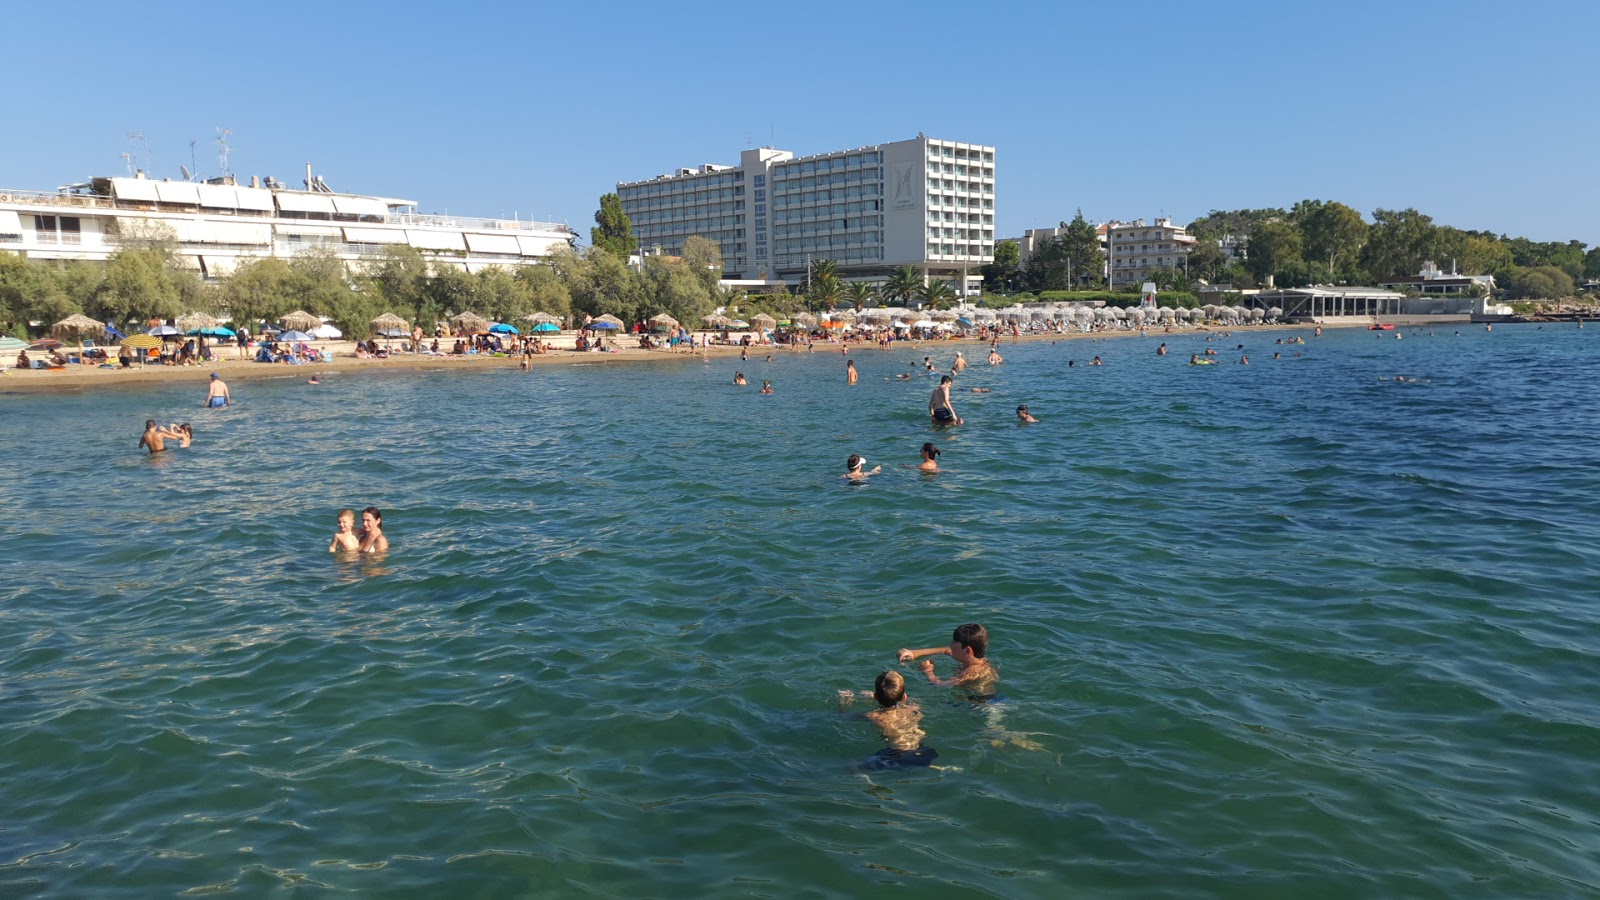 Mikro Kavouri beach'in fotoğrafı geniş plaj ile birlikte